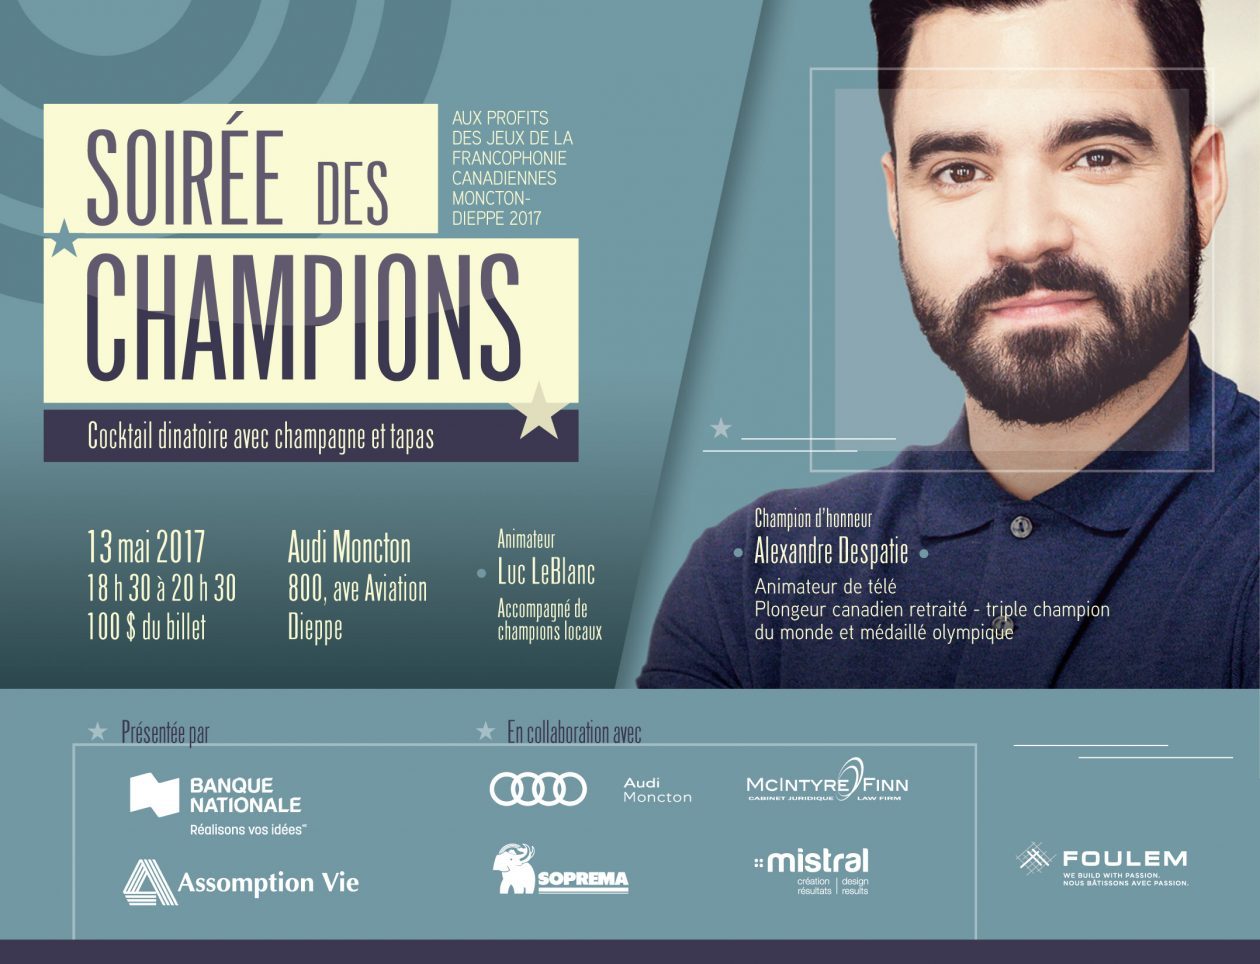 Alexandre Despatie à Dieppe pour soutenir les Jeux de la francophonie canadienne Moncton-Dieppe 2017